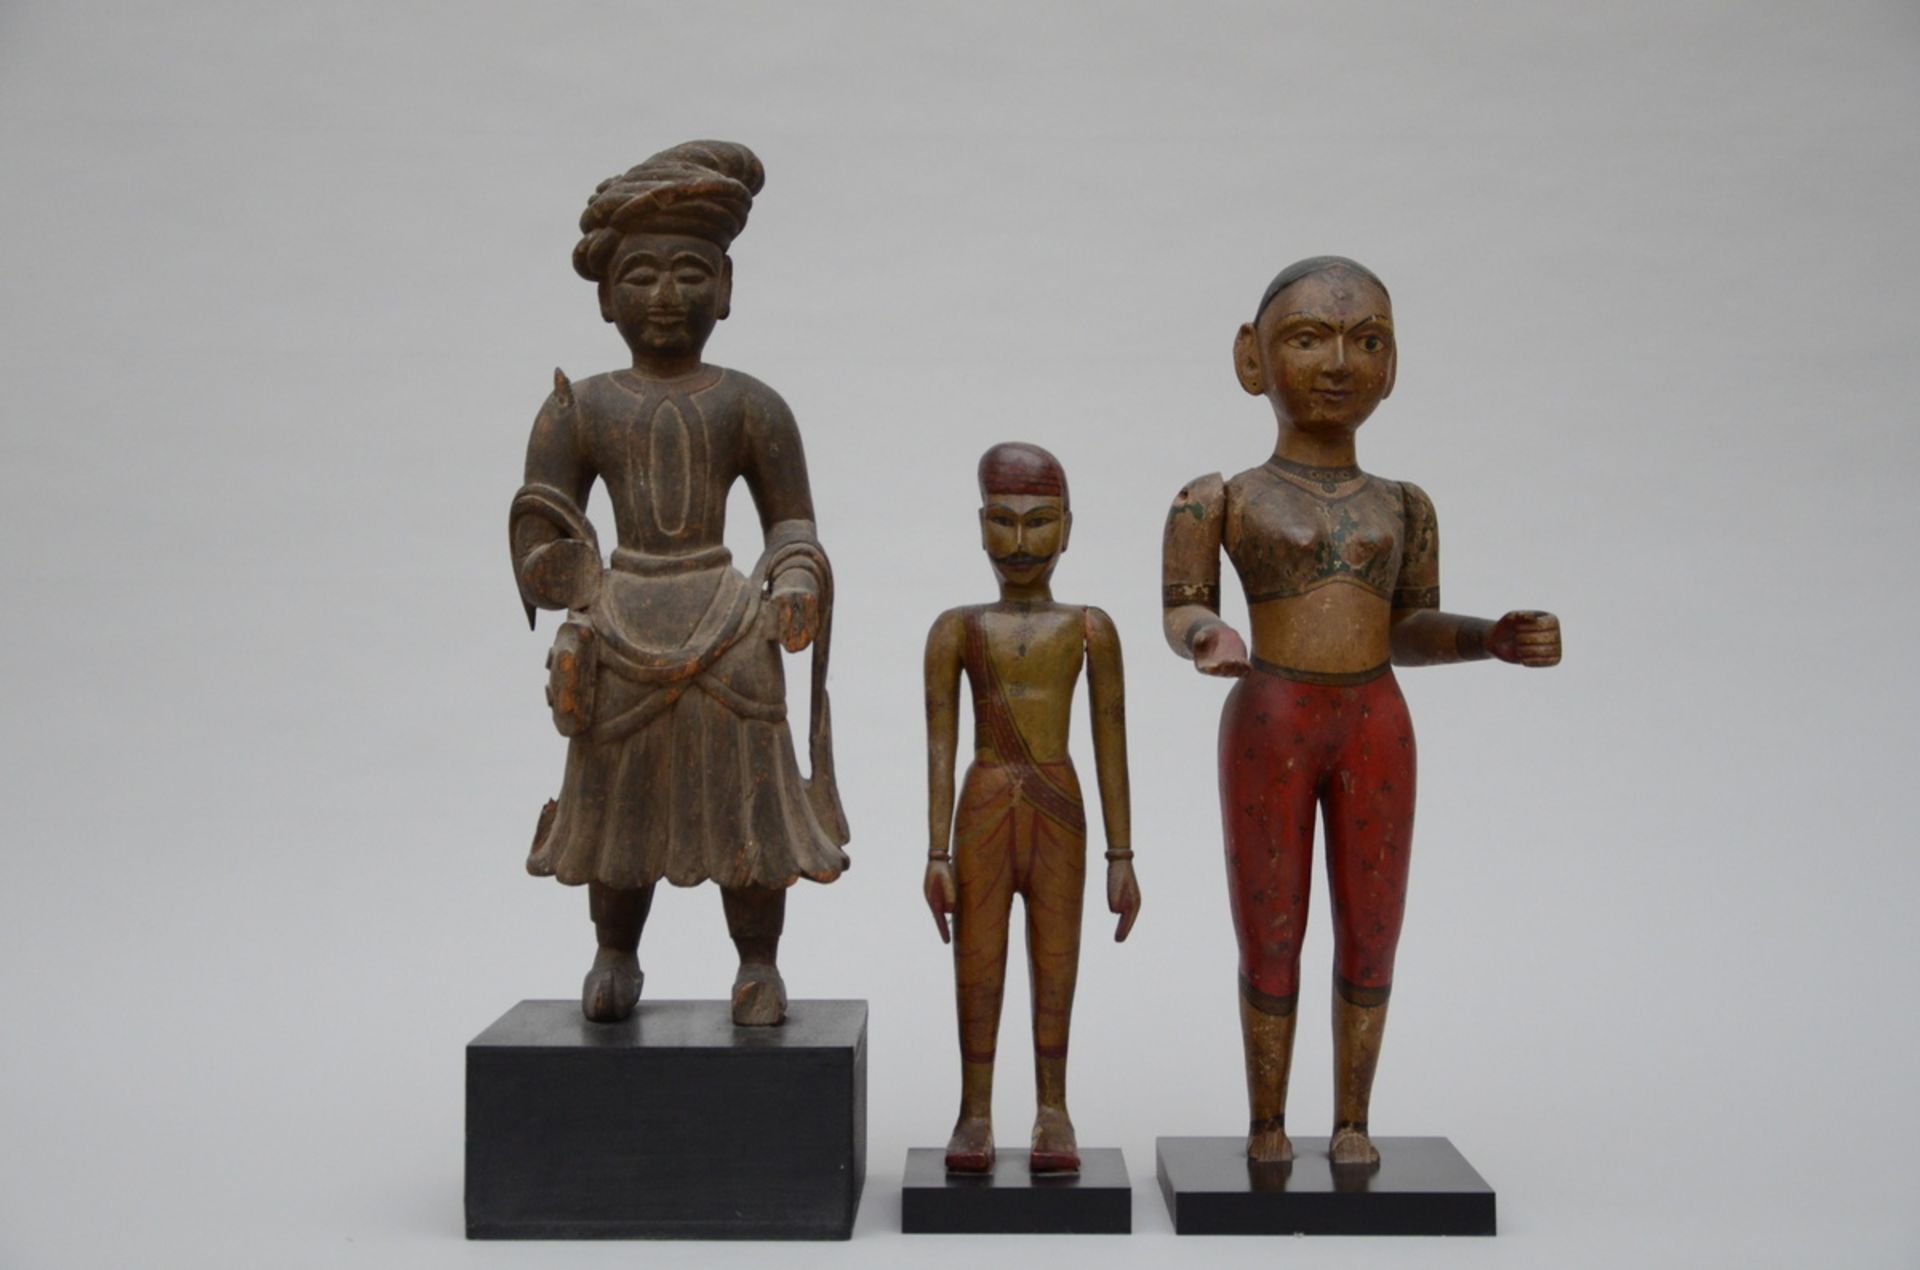 Three Indian wooden statues (55x22x15)(43x12x7)(53x21x9cm) (*)